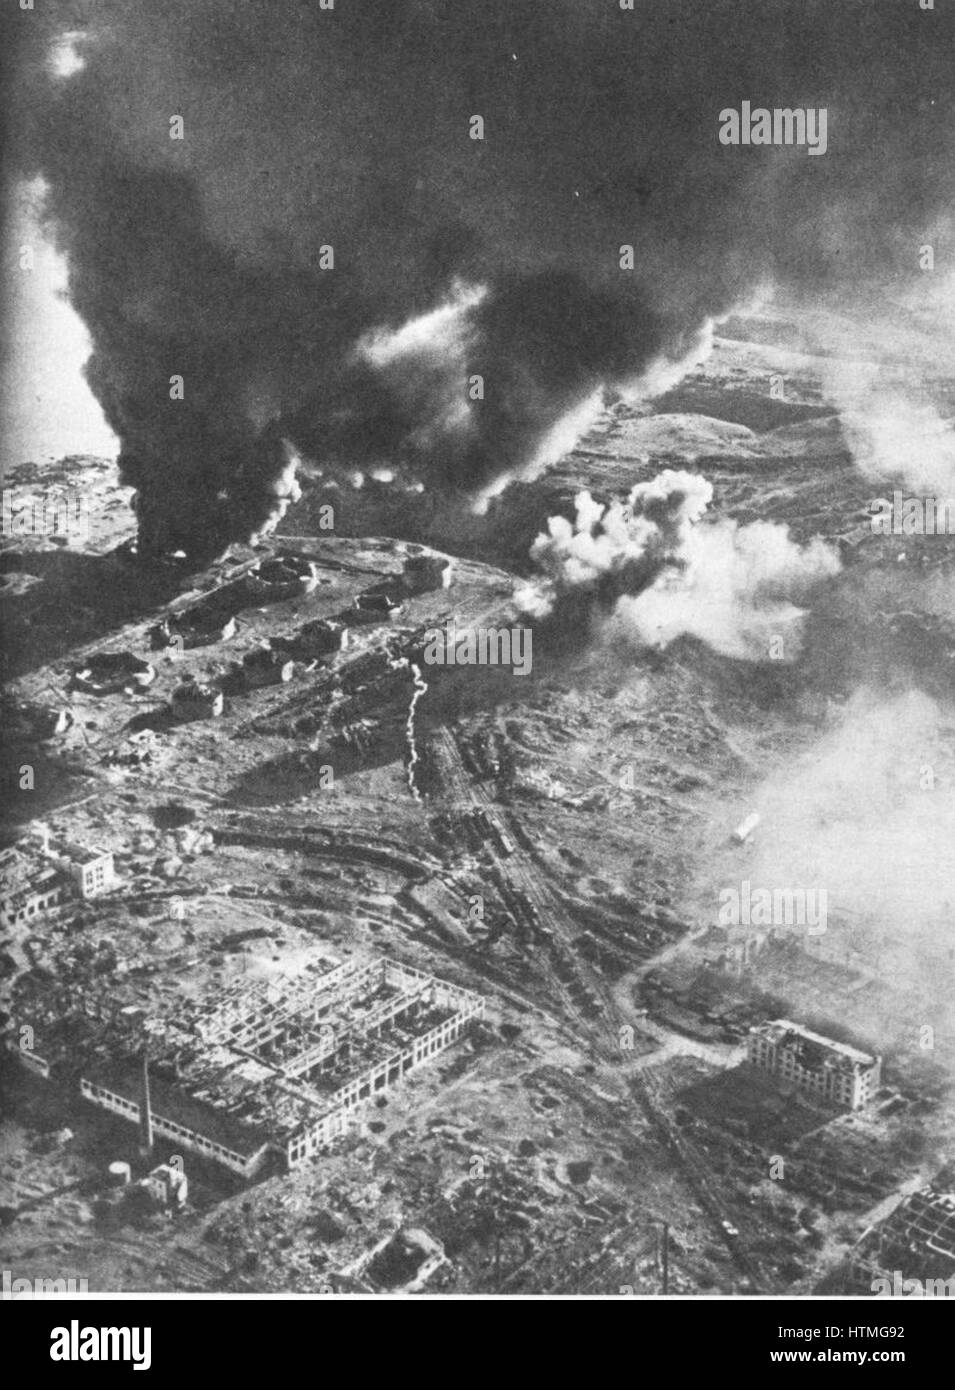 Bataille de Stalingrad - vue aérienne de magasins de carburant en feu. La bataille de Stalingrad entre l'Allemagne et l'Union soviétique a duré du 17 juillet 1942 jusqu'au 2 février 1943. La plus sanglante et brutale mosty de combats de la Seconde Guerre mondiale, elle a soutenu près de 2 mill Banque D'Images